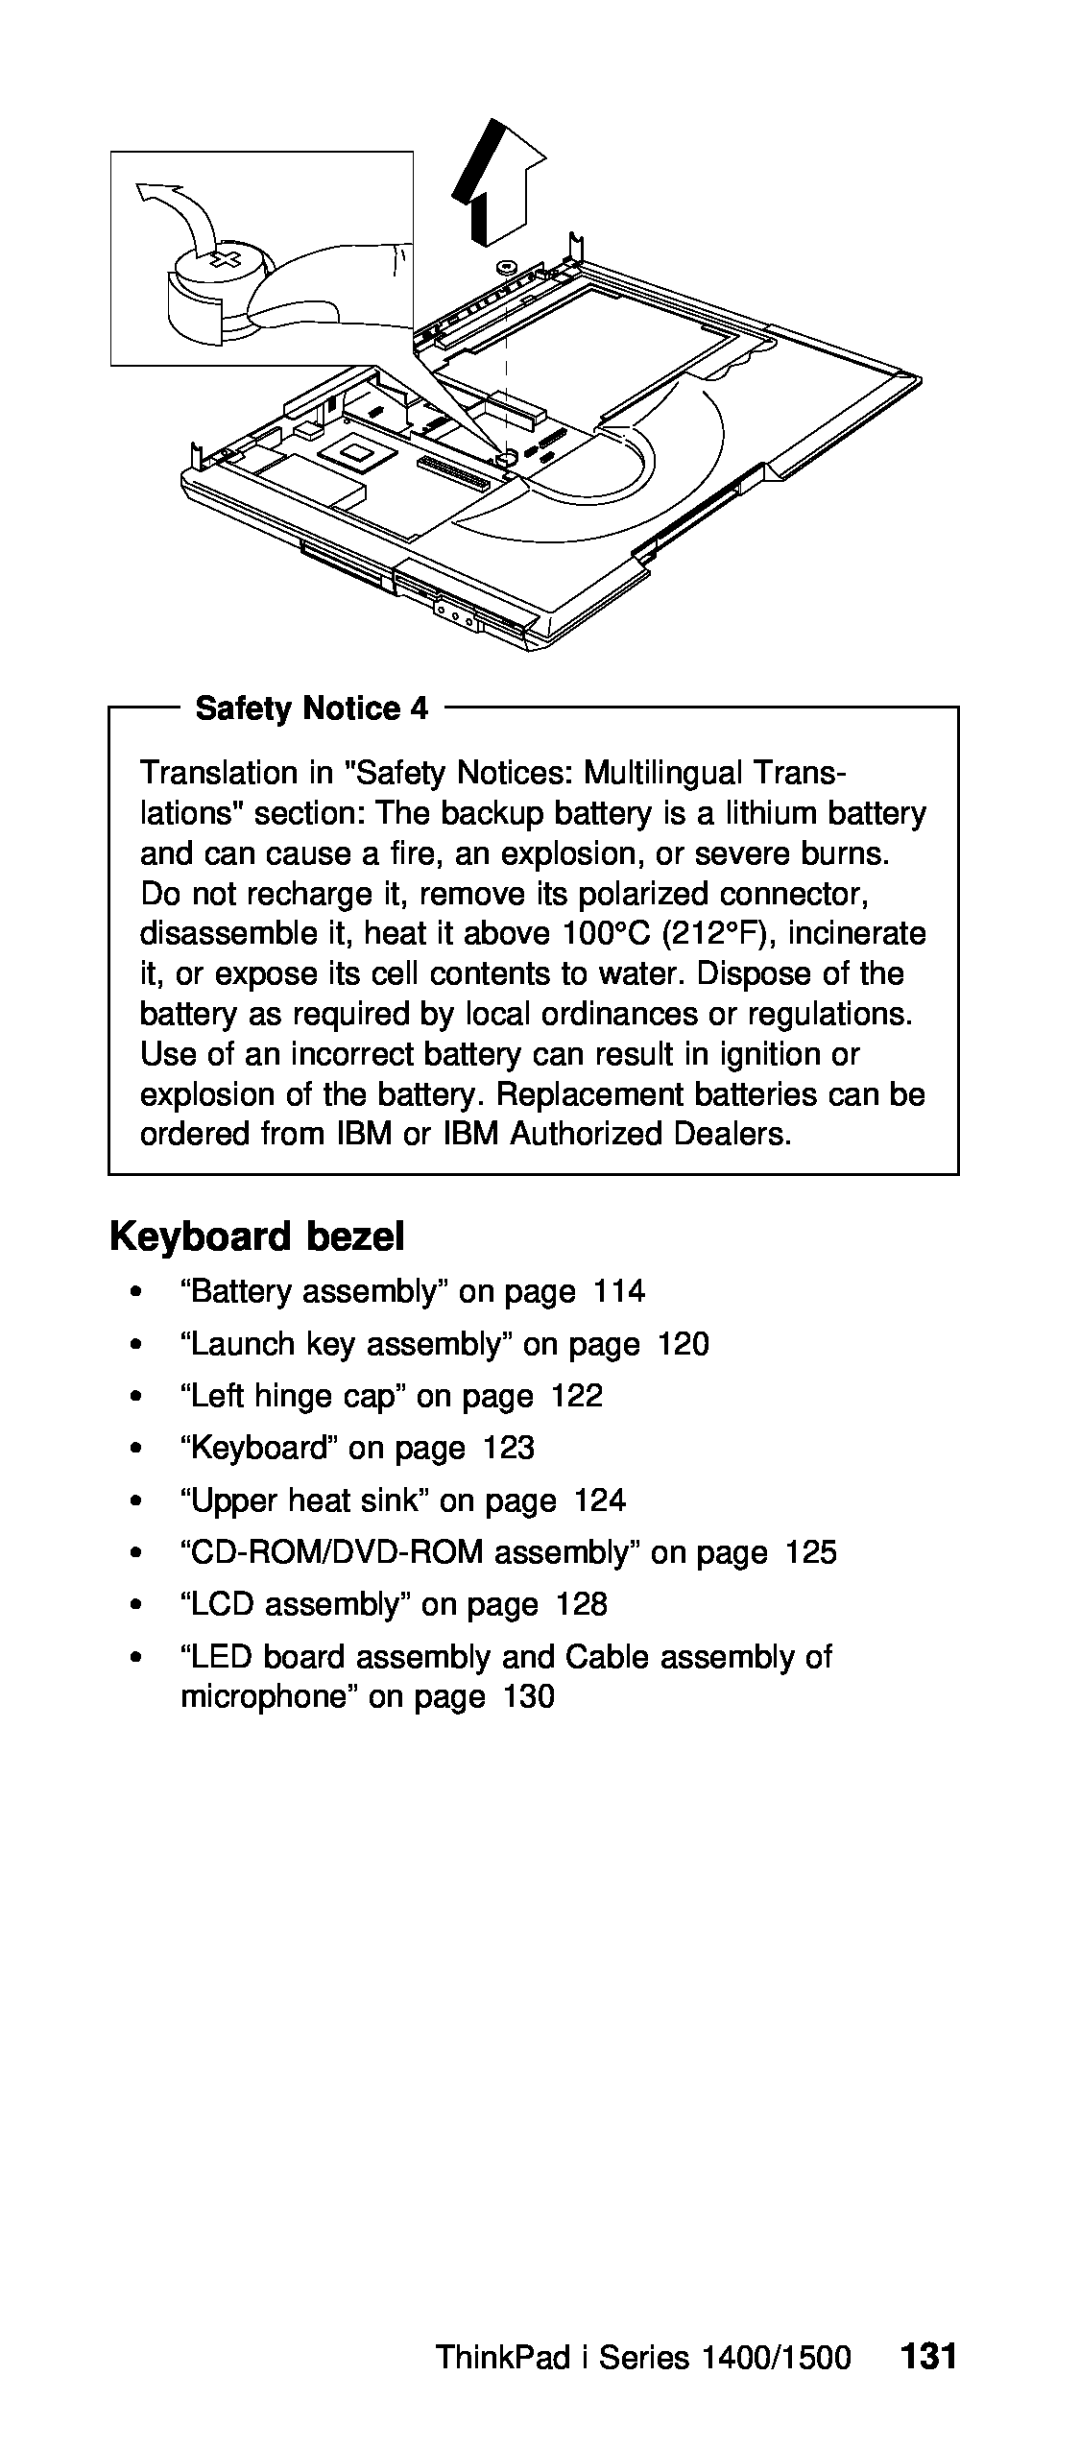 IBM Series 1400, Series 1500 manual Keyboard bezel, Safety 